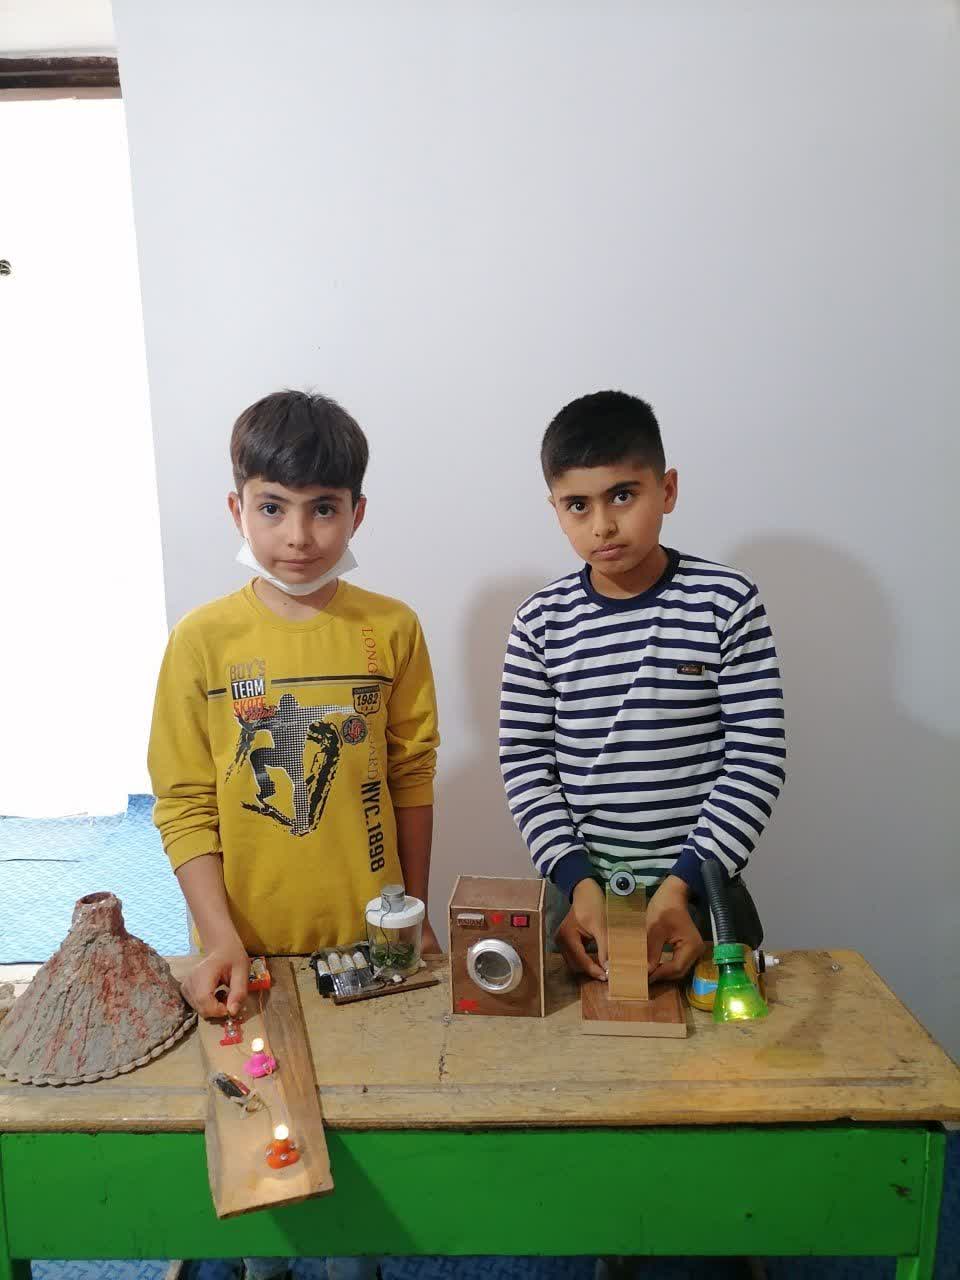   ابتکارات دو نوجوان روستا عرب لاله گون از مواد بازیافتی